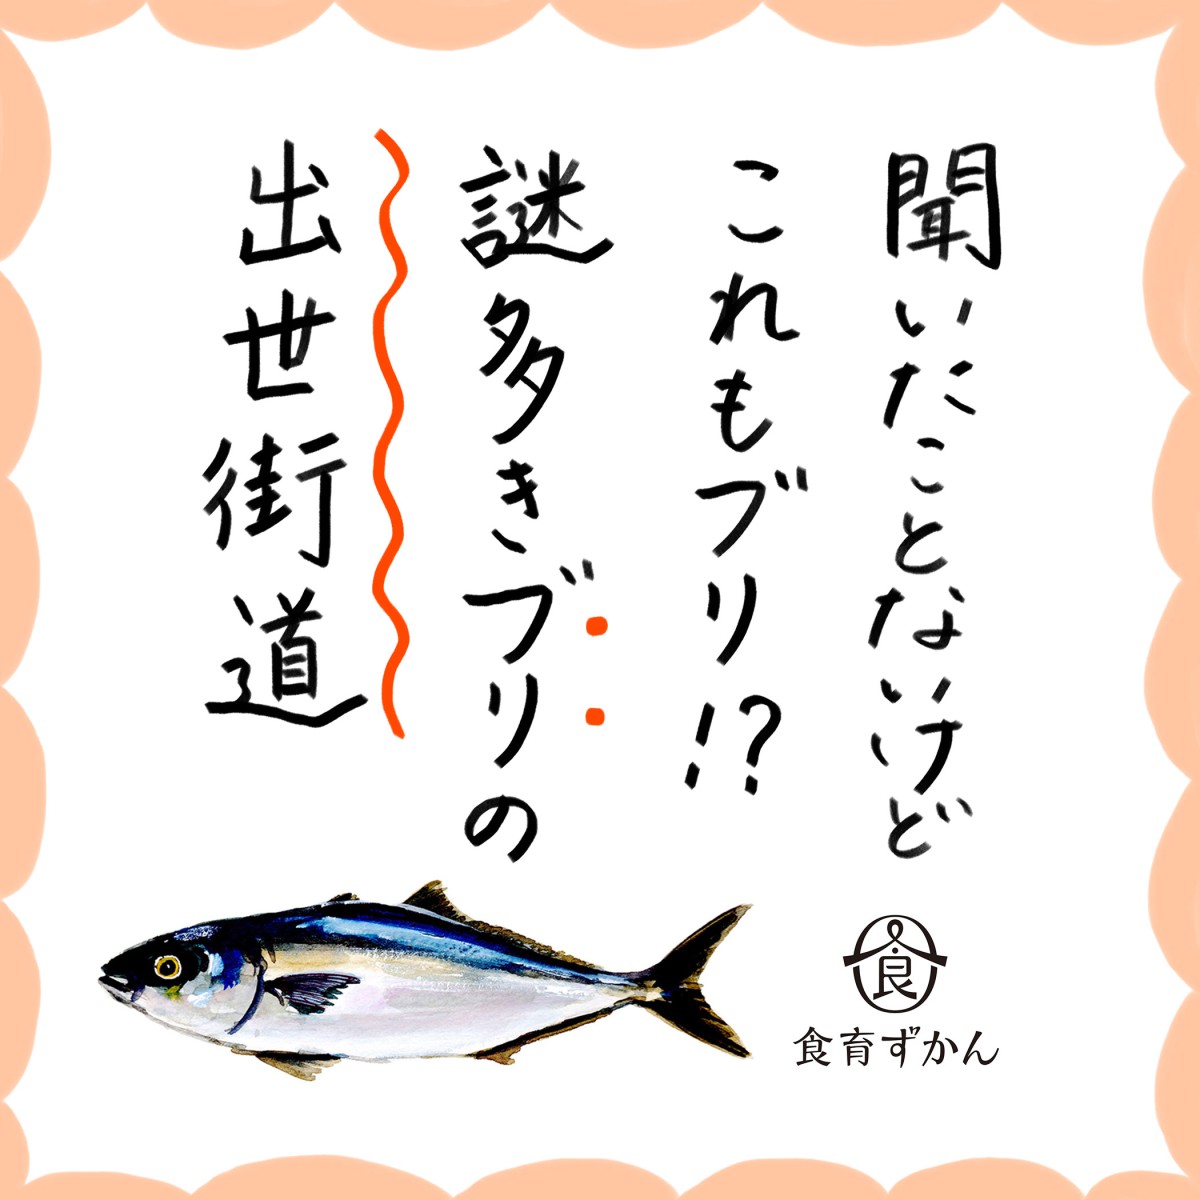 代表的な出世魚 ブリの成長と名前の秘密に迫る 一般財団法人 日本educe食育総合研究所